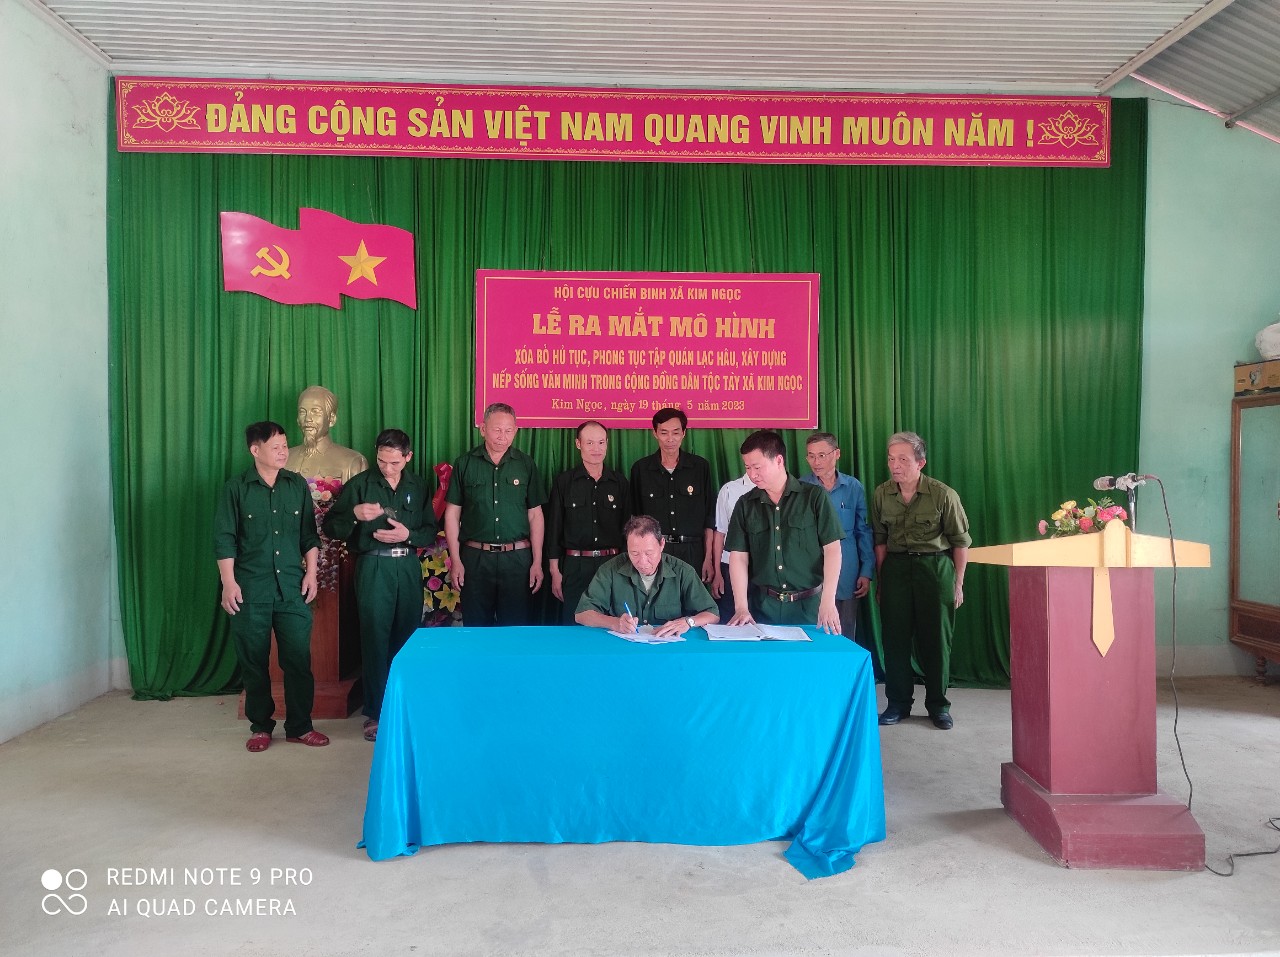 Hội Cựu chiến binh xã Kim Ngọc ra mắt mô hình xóa bỏ hủ tục, phong tục tập quán lạc, xây dựng nếp sống văn minh trong cộng đồng dân tộc Tày